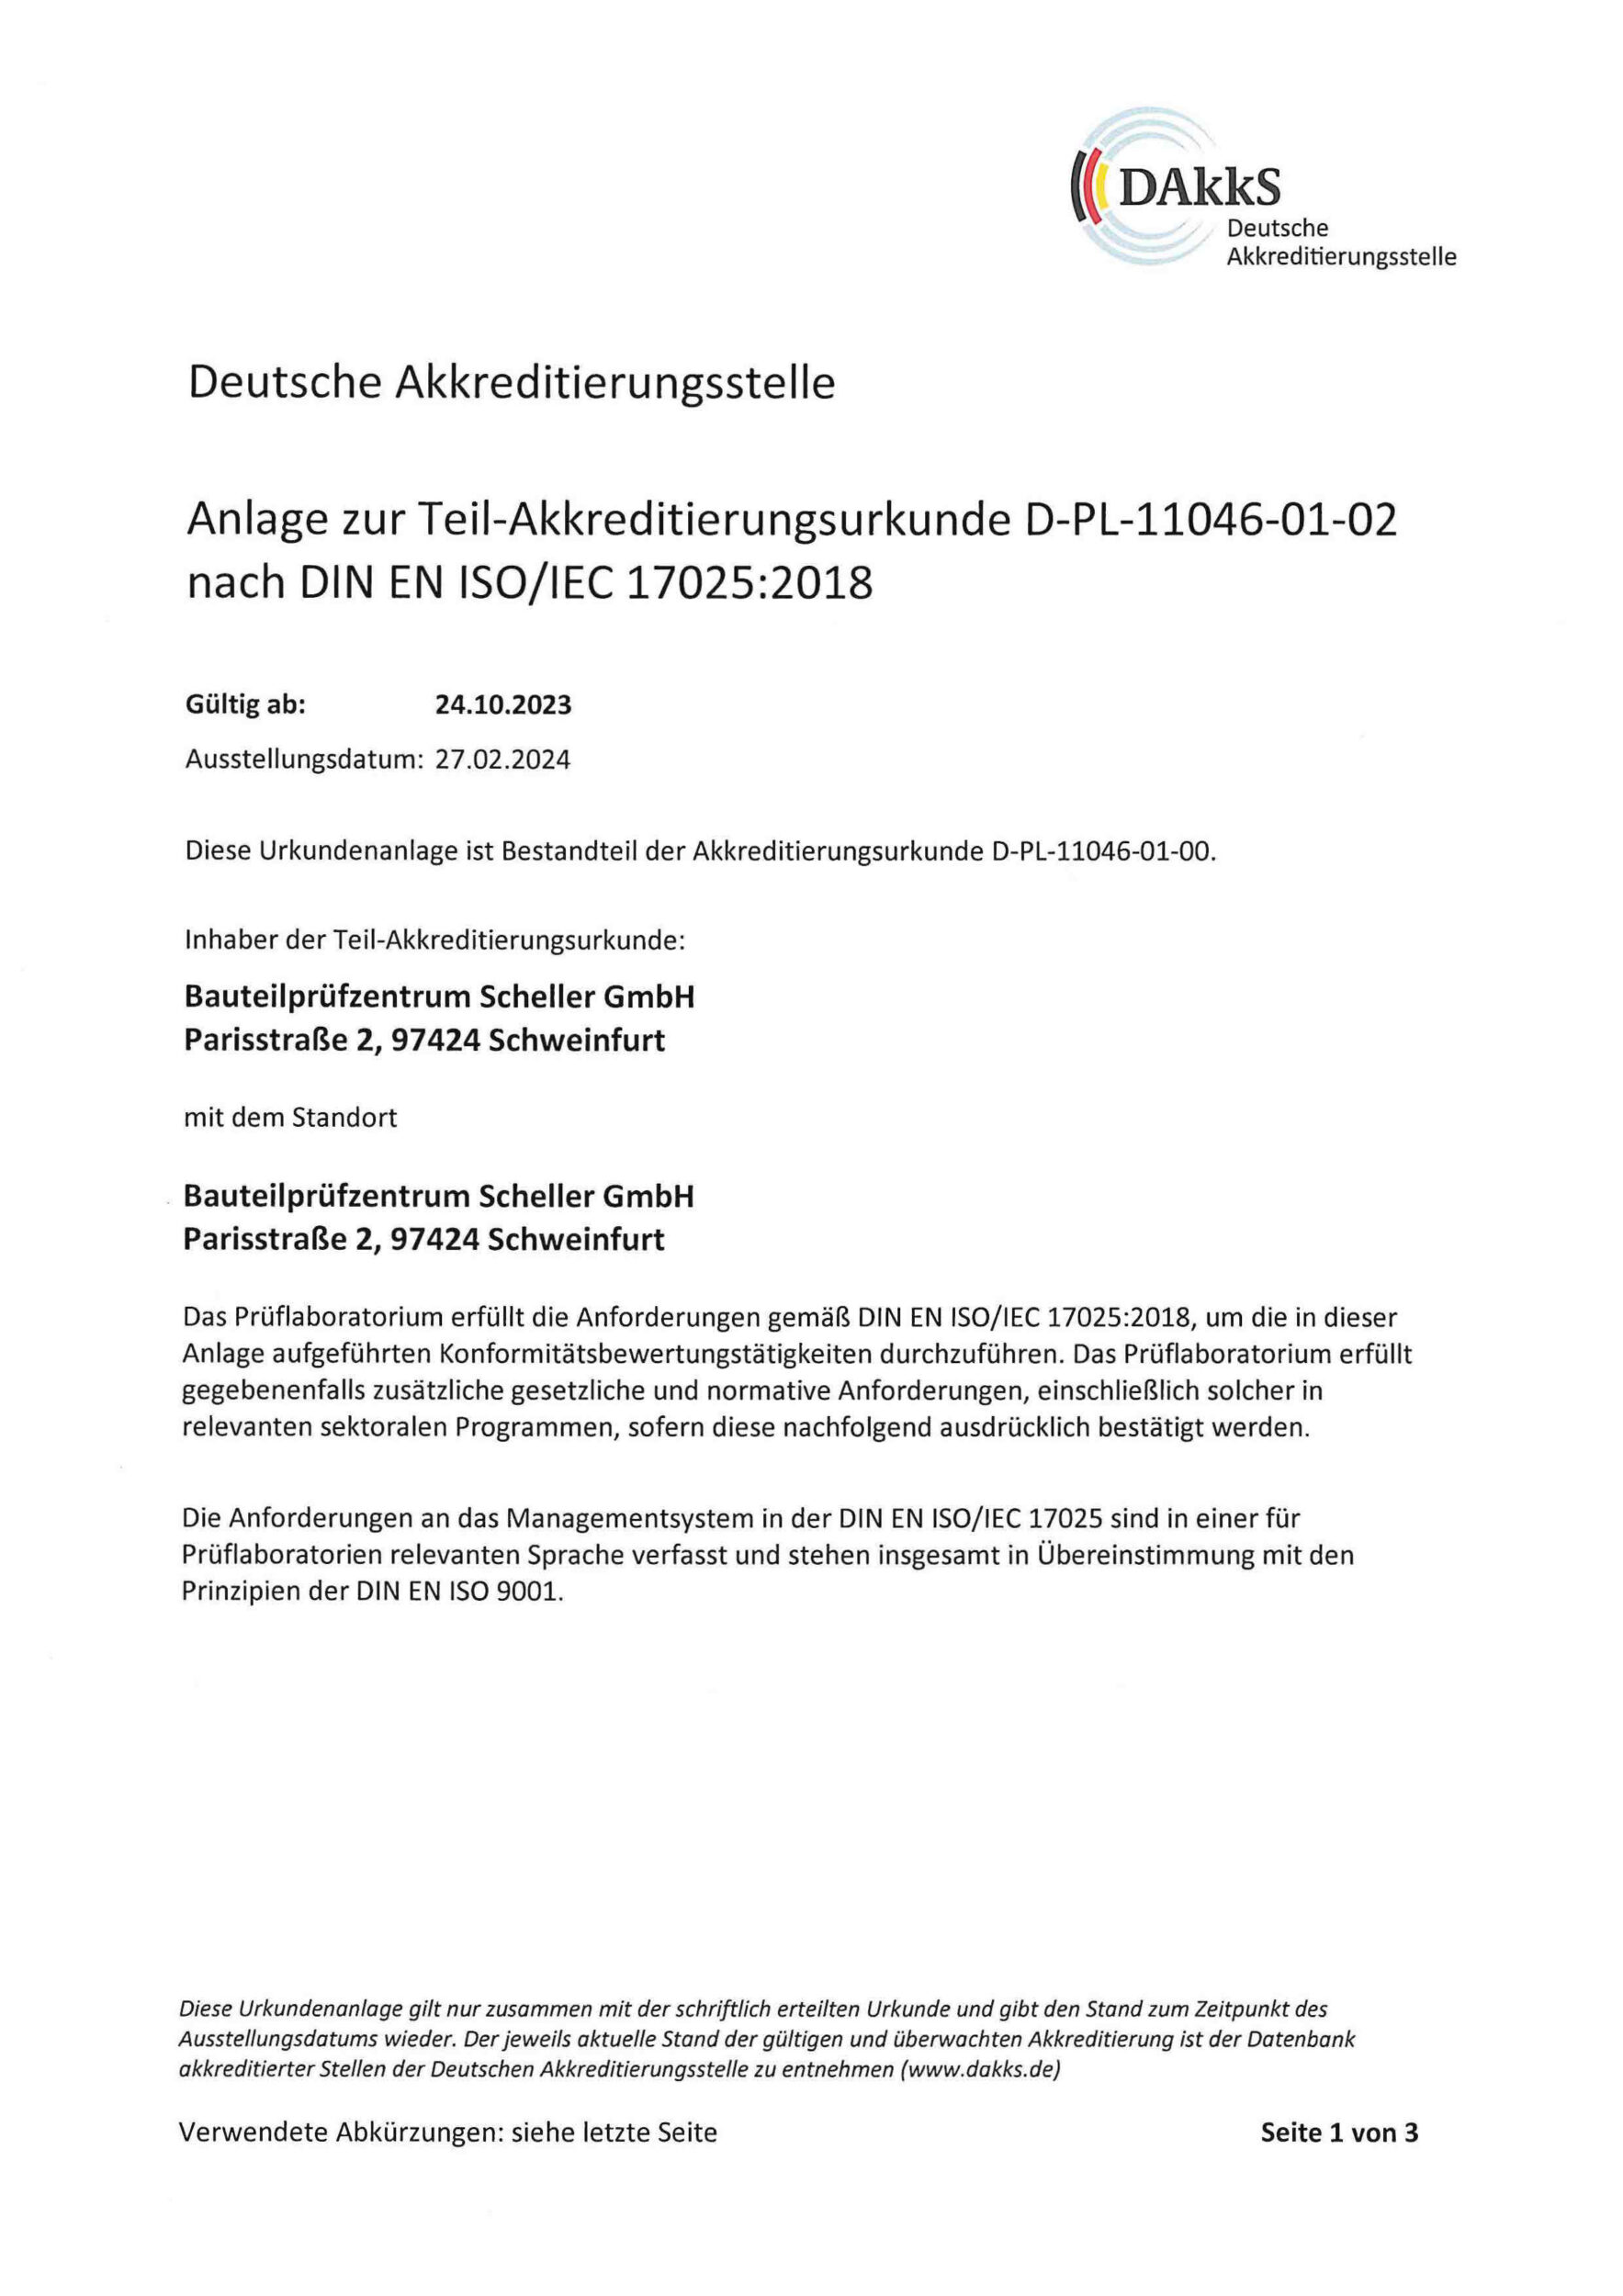 Anlage zur Teil Akkreditierungsurkunde elektrische Prüfungen nach DIN EN ISO/IEC 17025:2018 BPZS Bauteilprüfzentrum Scheller GmbH